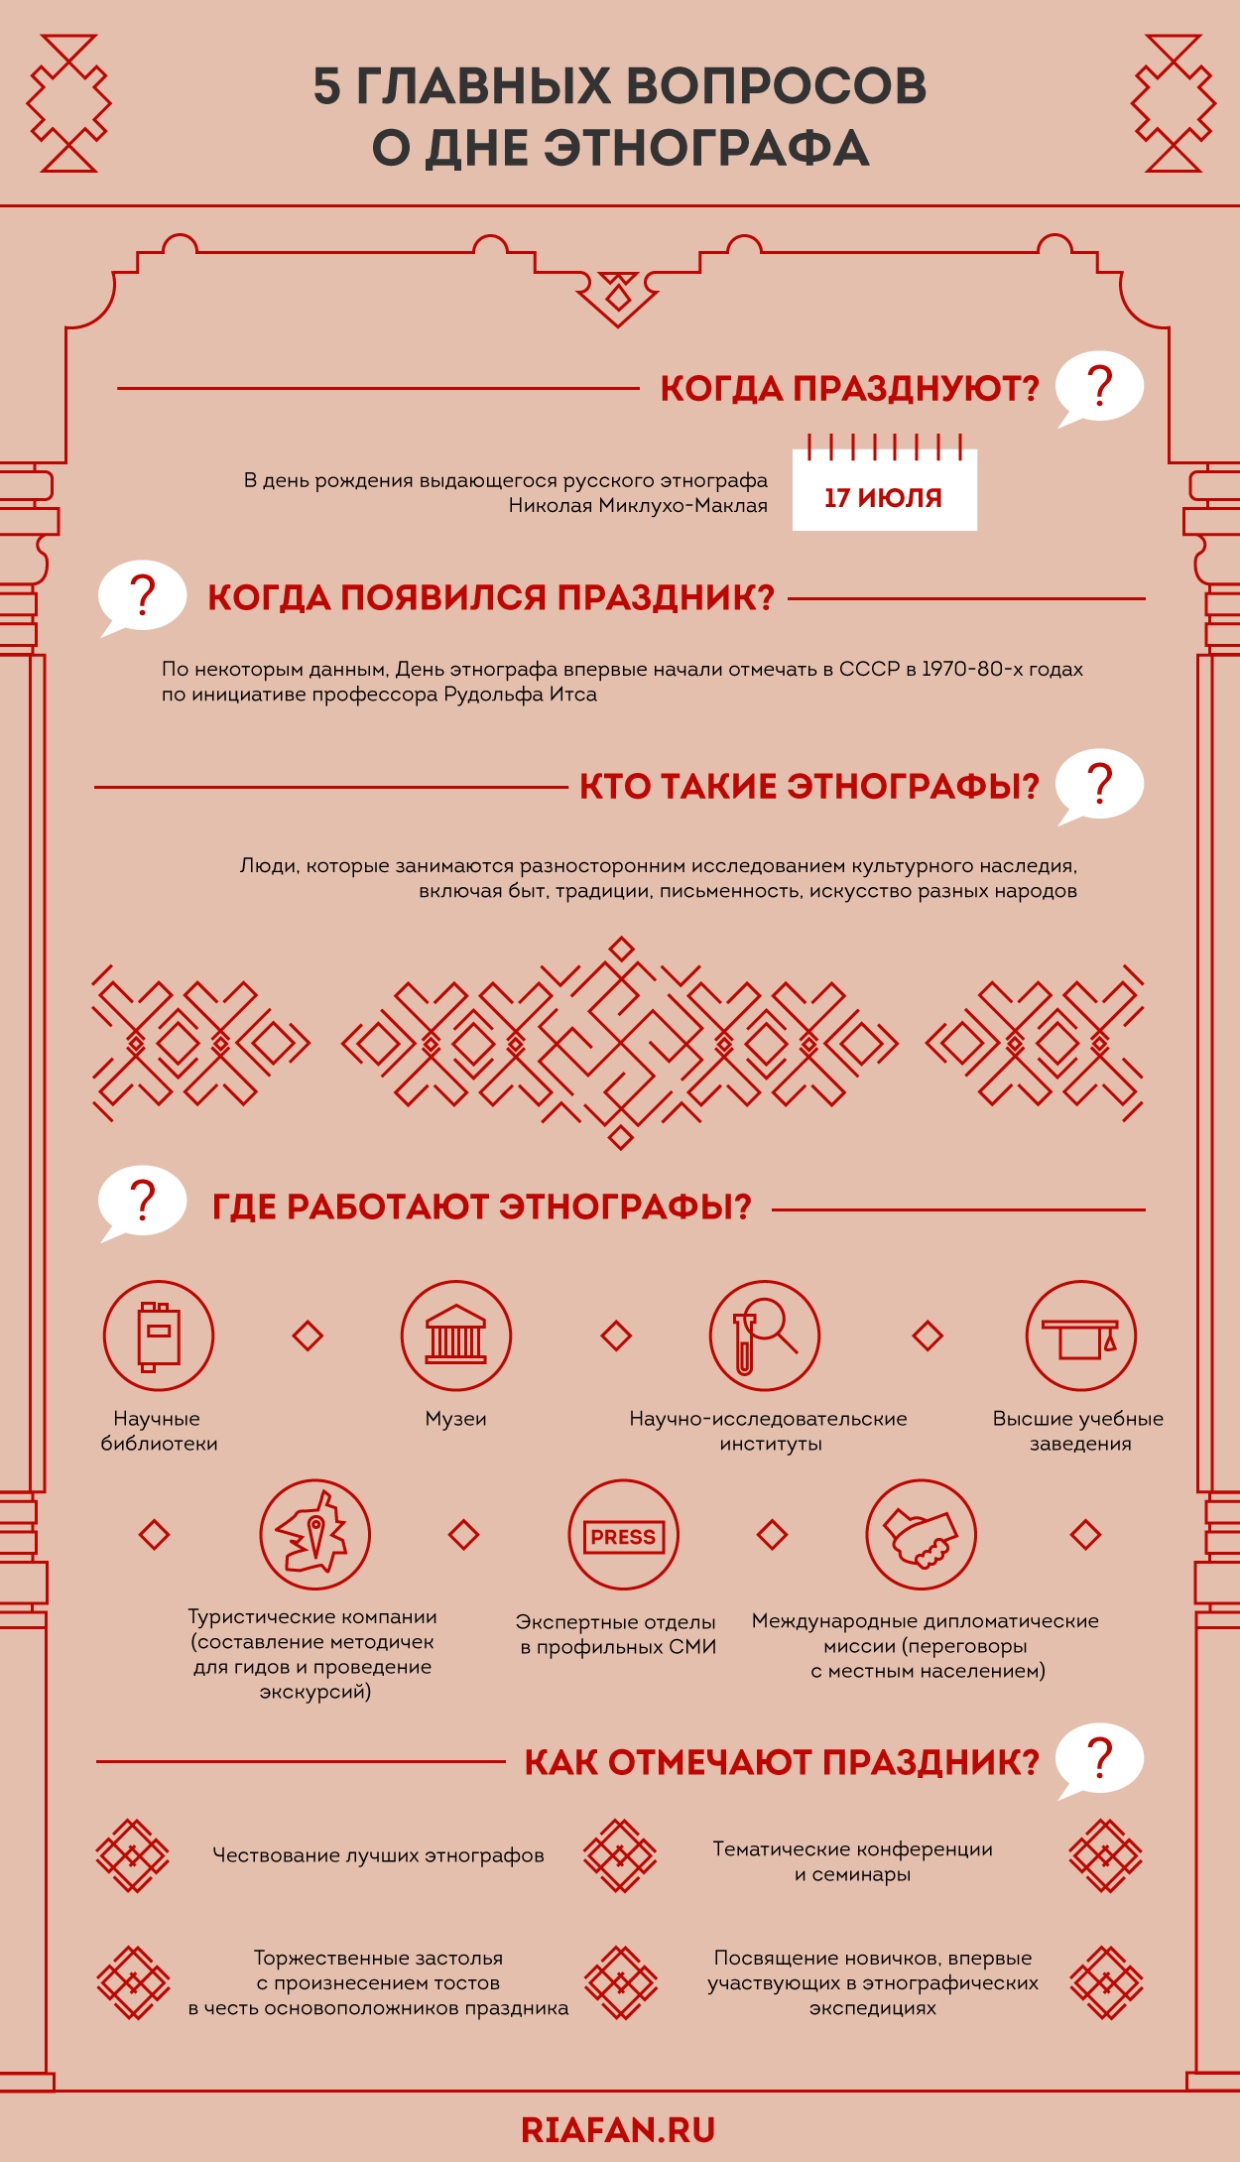 Хранители наследия народов: 17 июля в России отмечают День этнографа